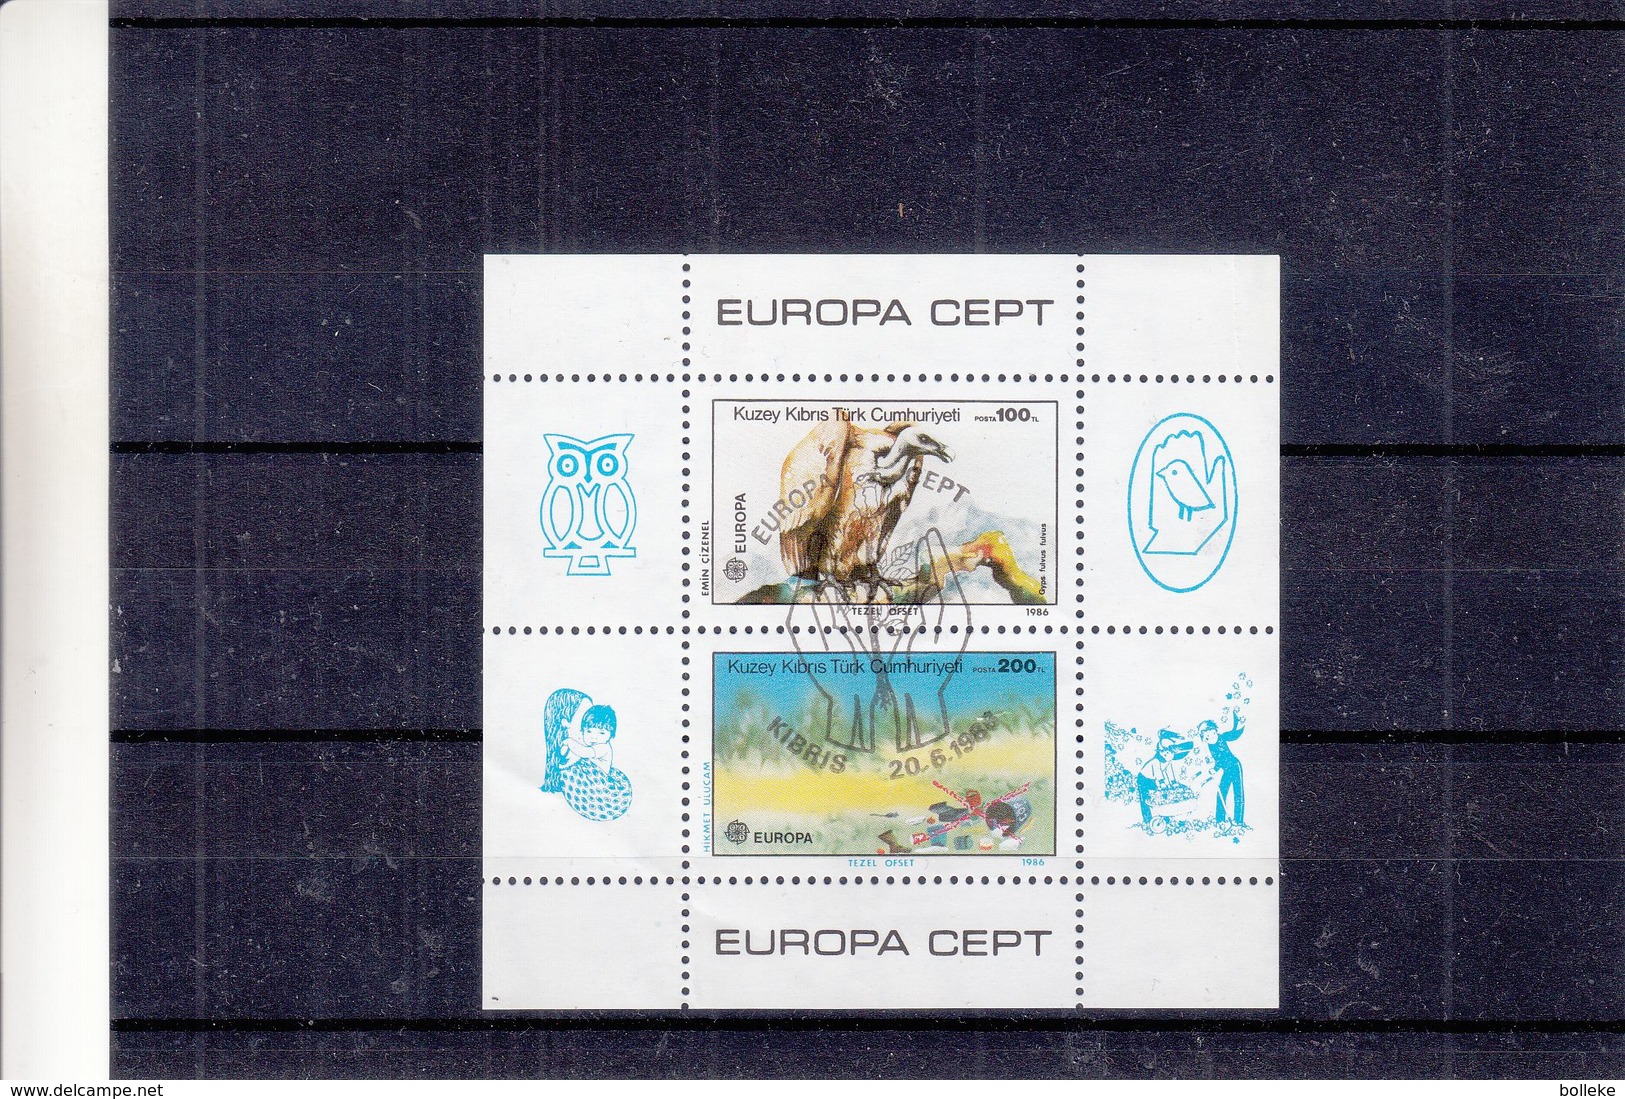 Europa 1986 - Chypre Turque - Bloc Oblitéré - Oiseaux - Vautours - Hiboux - Valeur 15 Euros - Bloc Froissée - Used Stamps